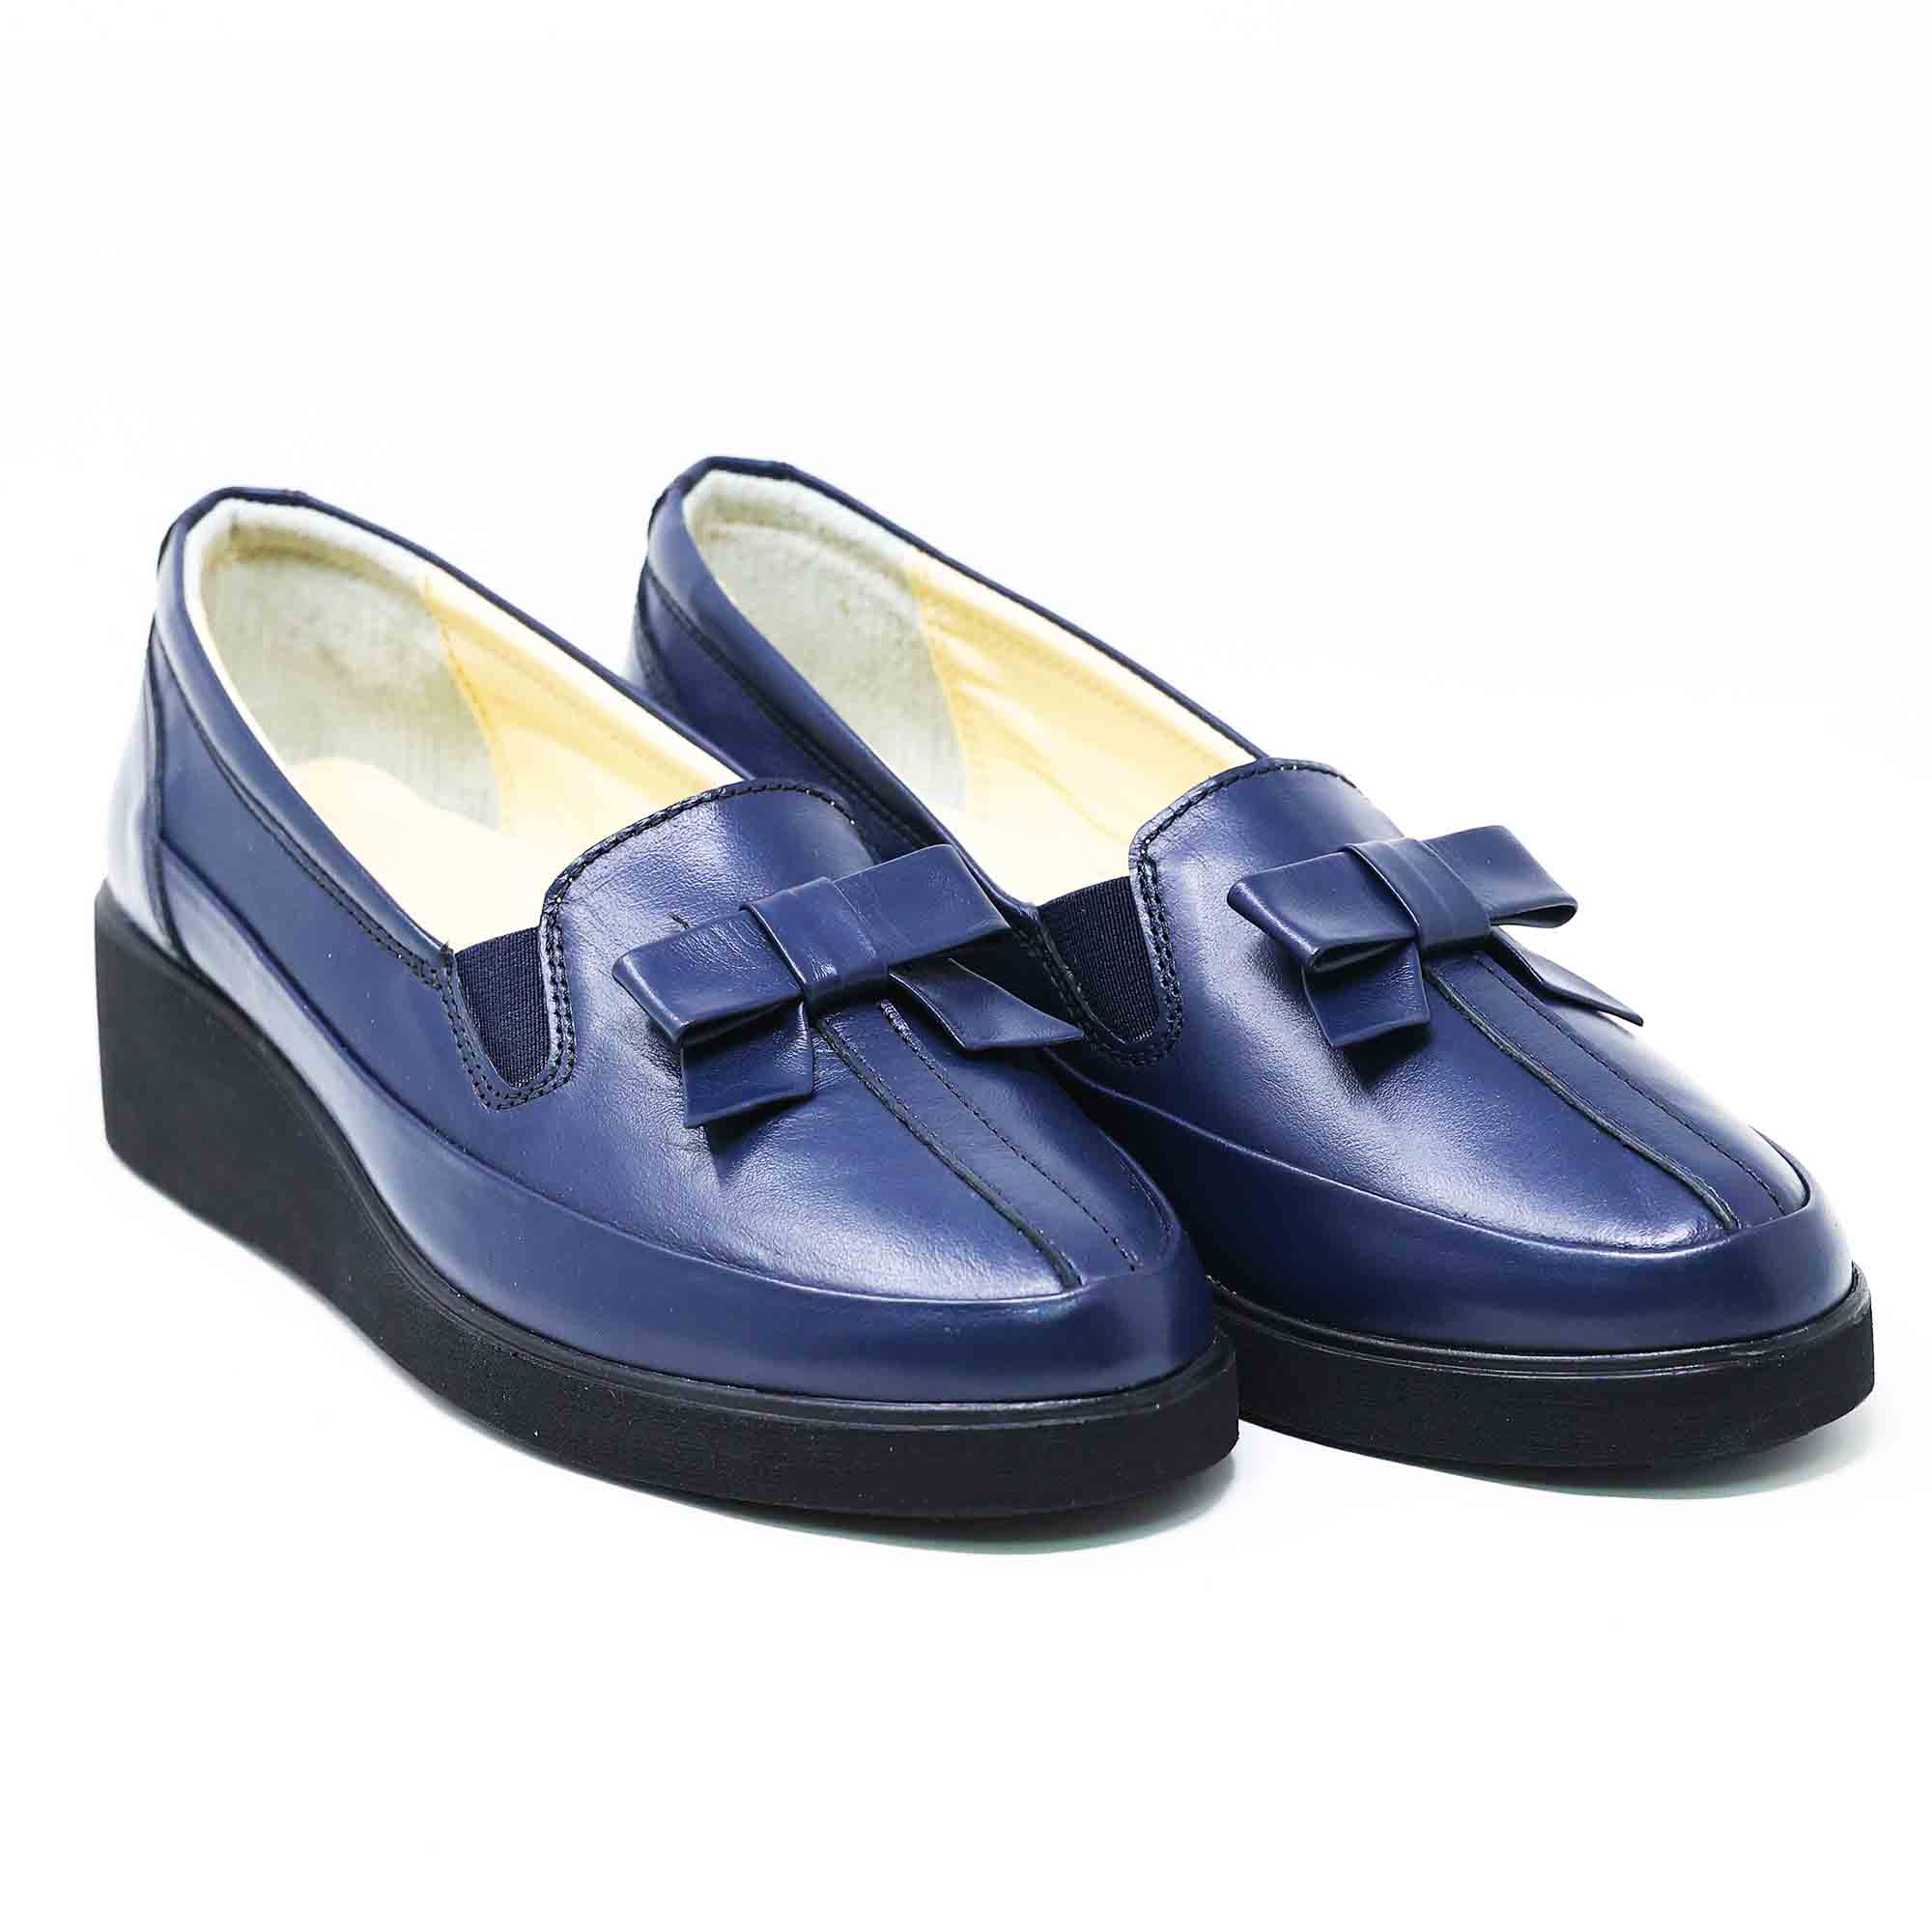 Pantofi damă din piele naturală Emet 164-Blu